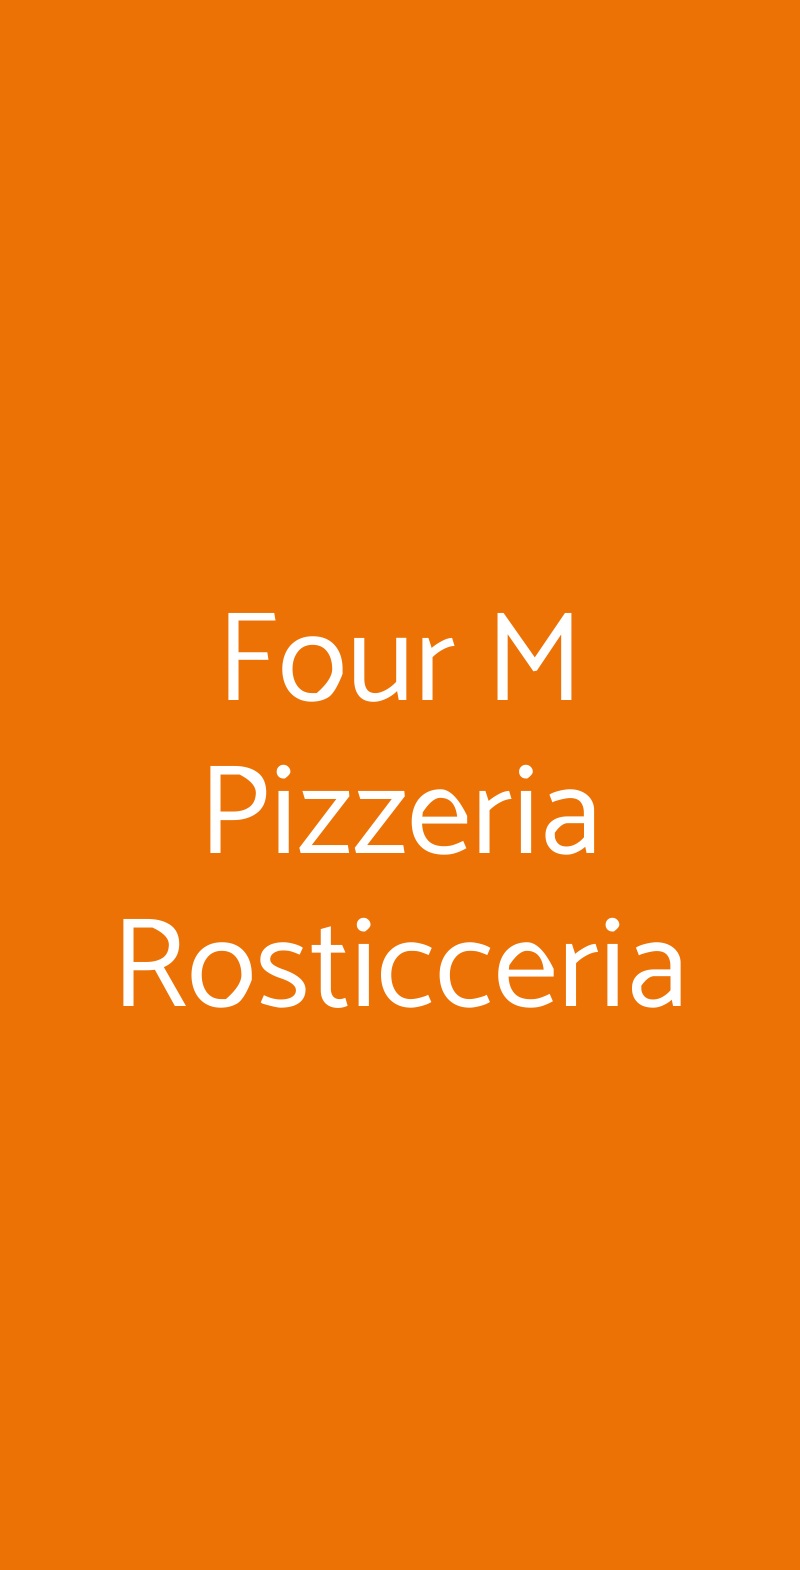 Four M Pizzeria Rosticceria Roma menù 1 pagina